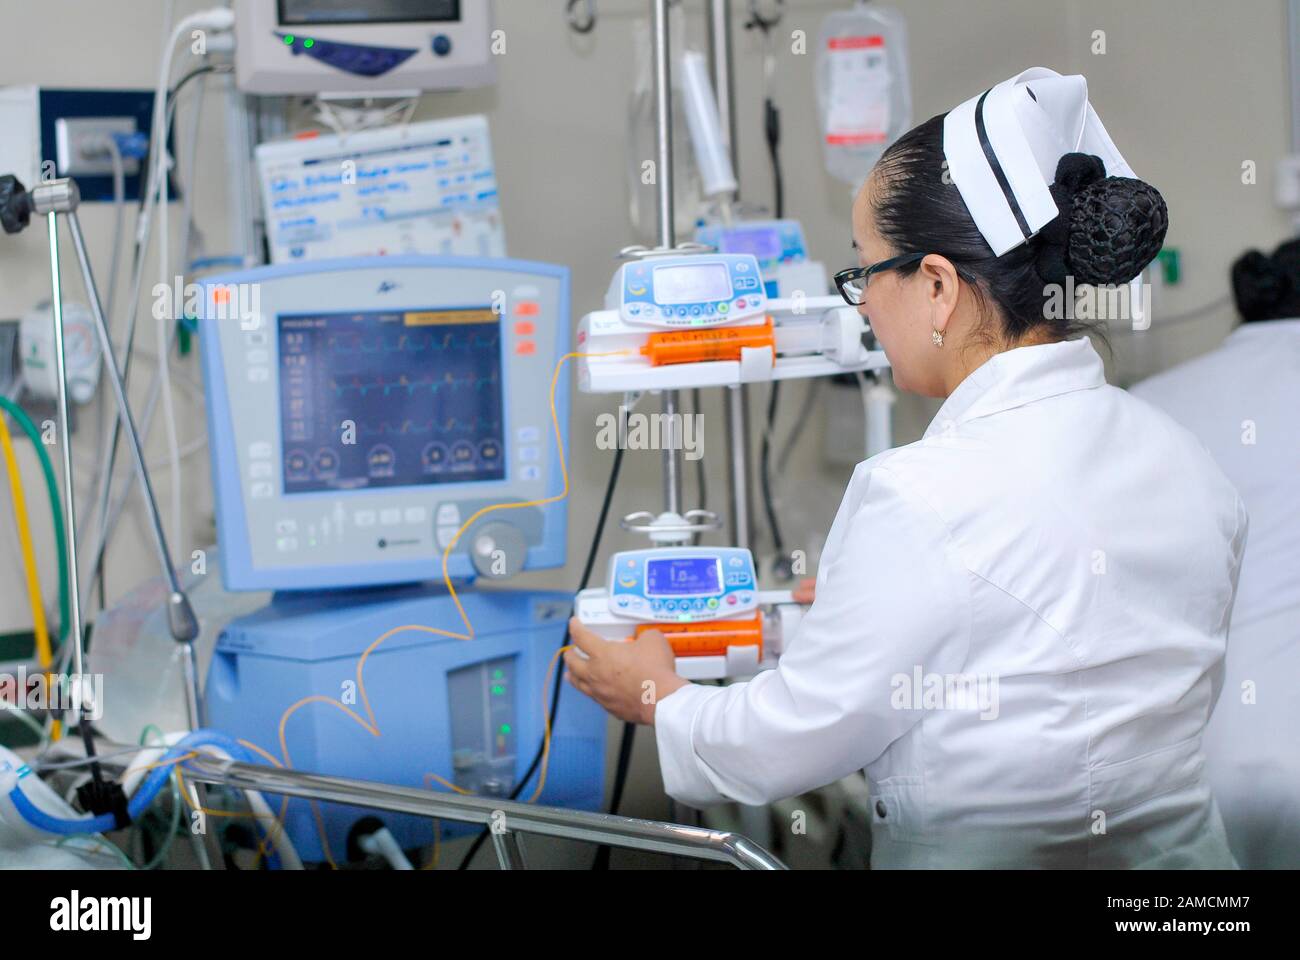 Une infirmière qui installe un médicament dans la pompe à perfusion. Hôpital Pédiatrique. Guayaquil. Équateur Banque D'Images